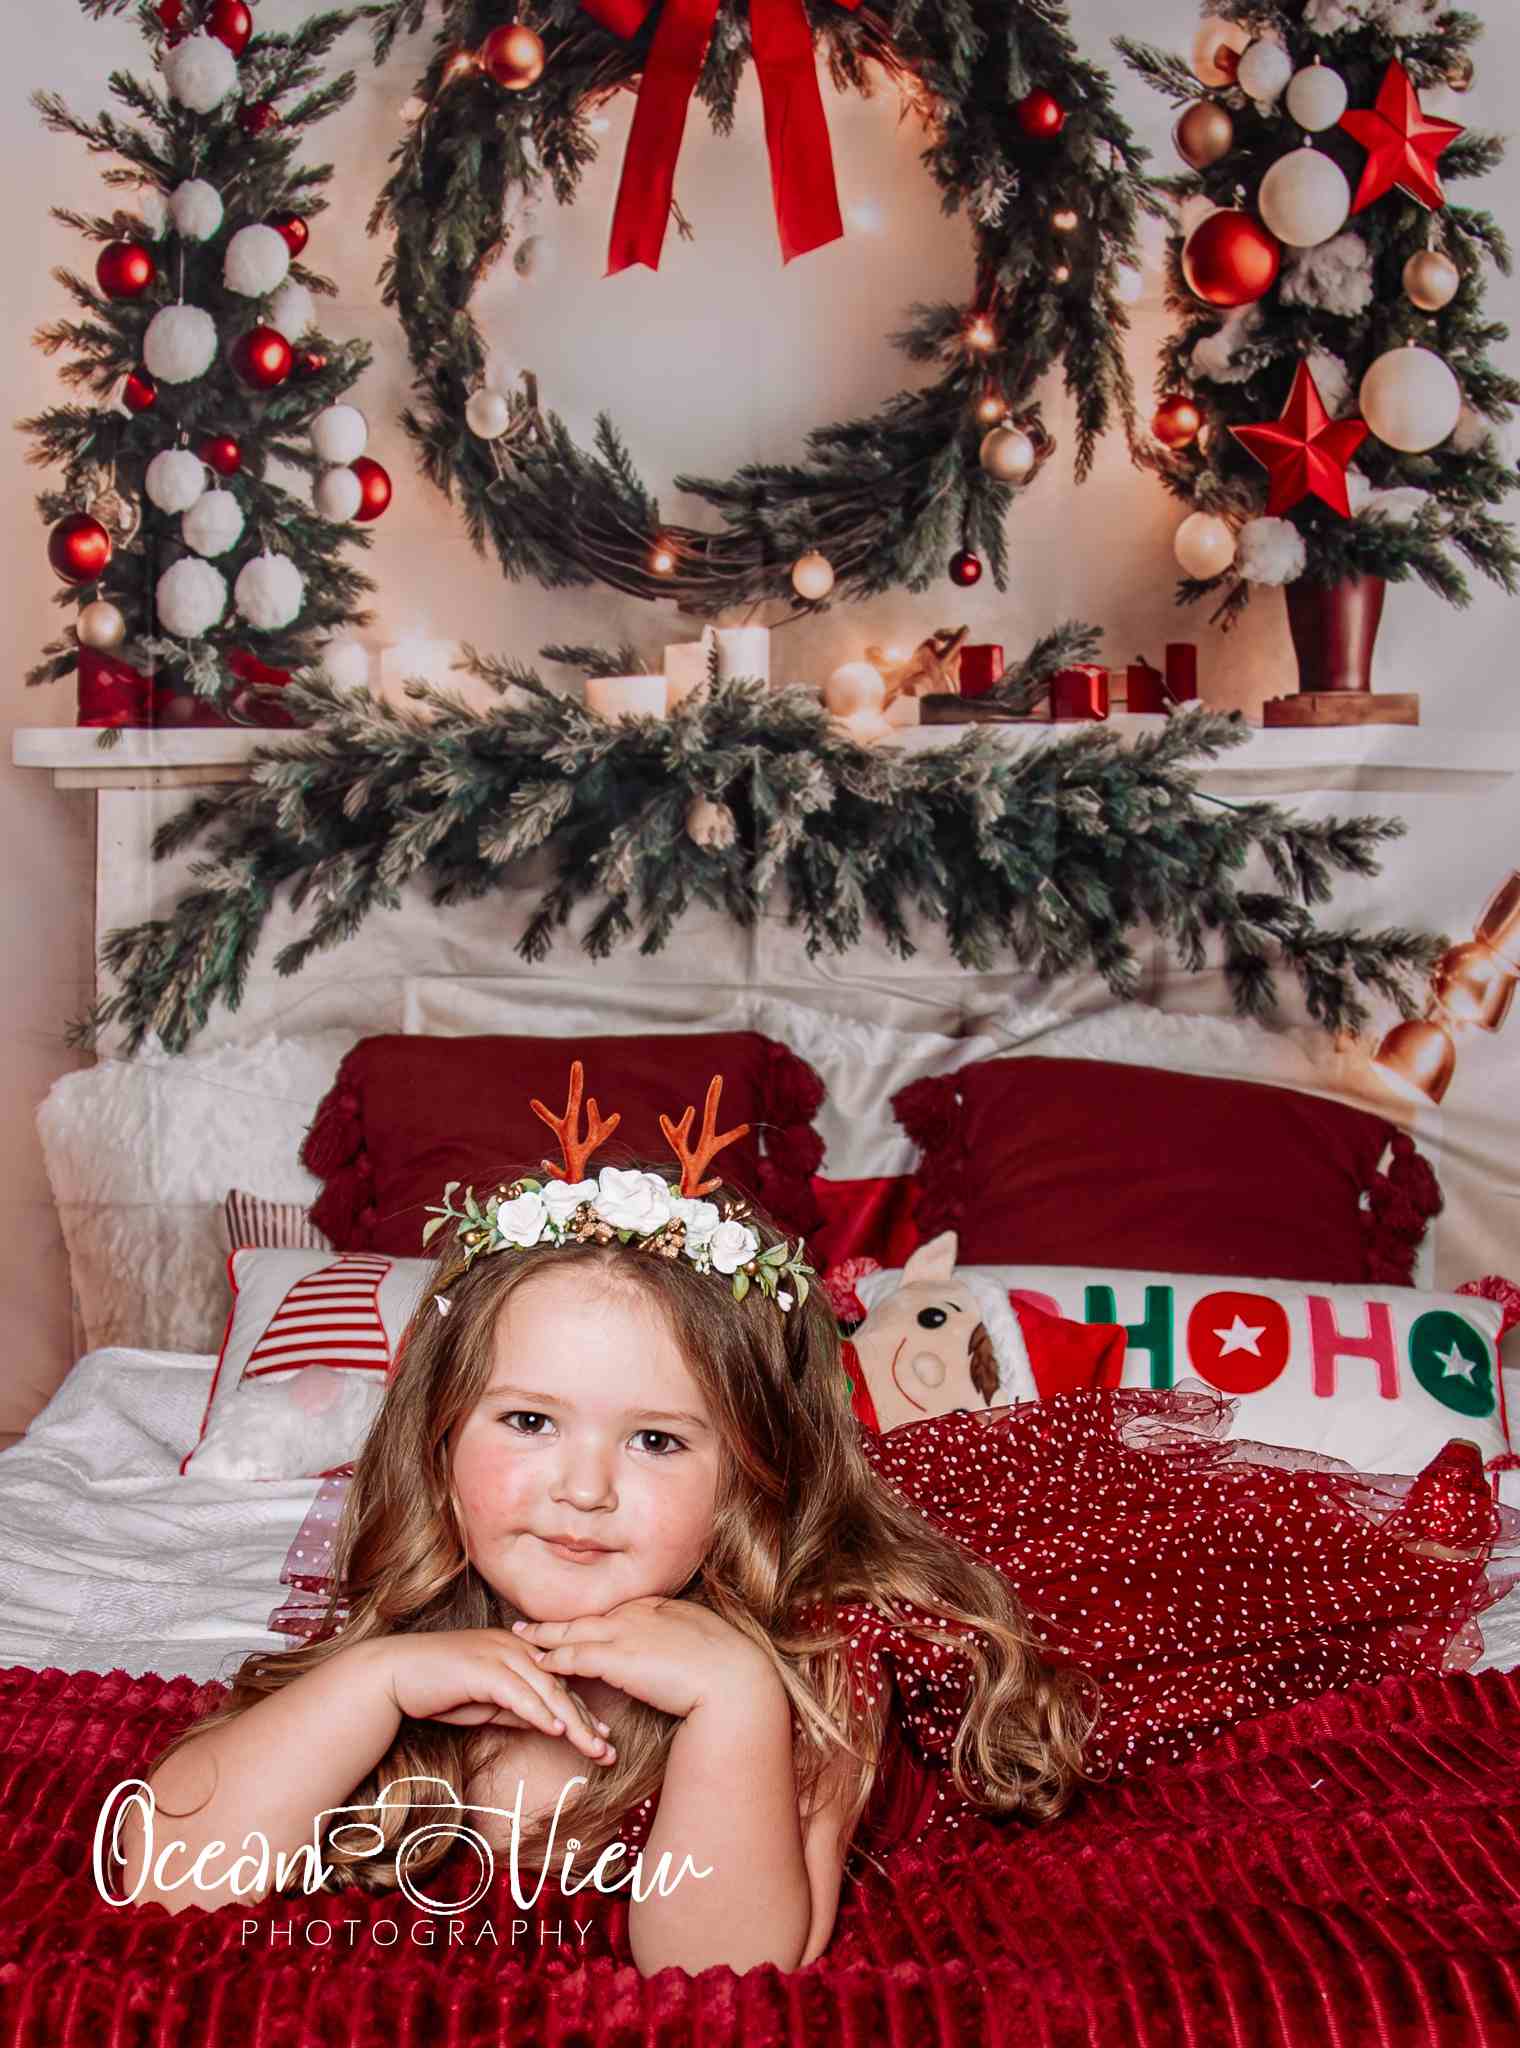 Kate Warme Weihnachten Kopfteil Baum Hintergrund für Fotografie